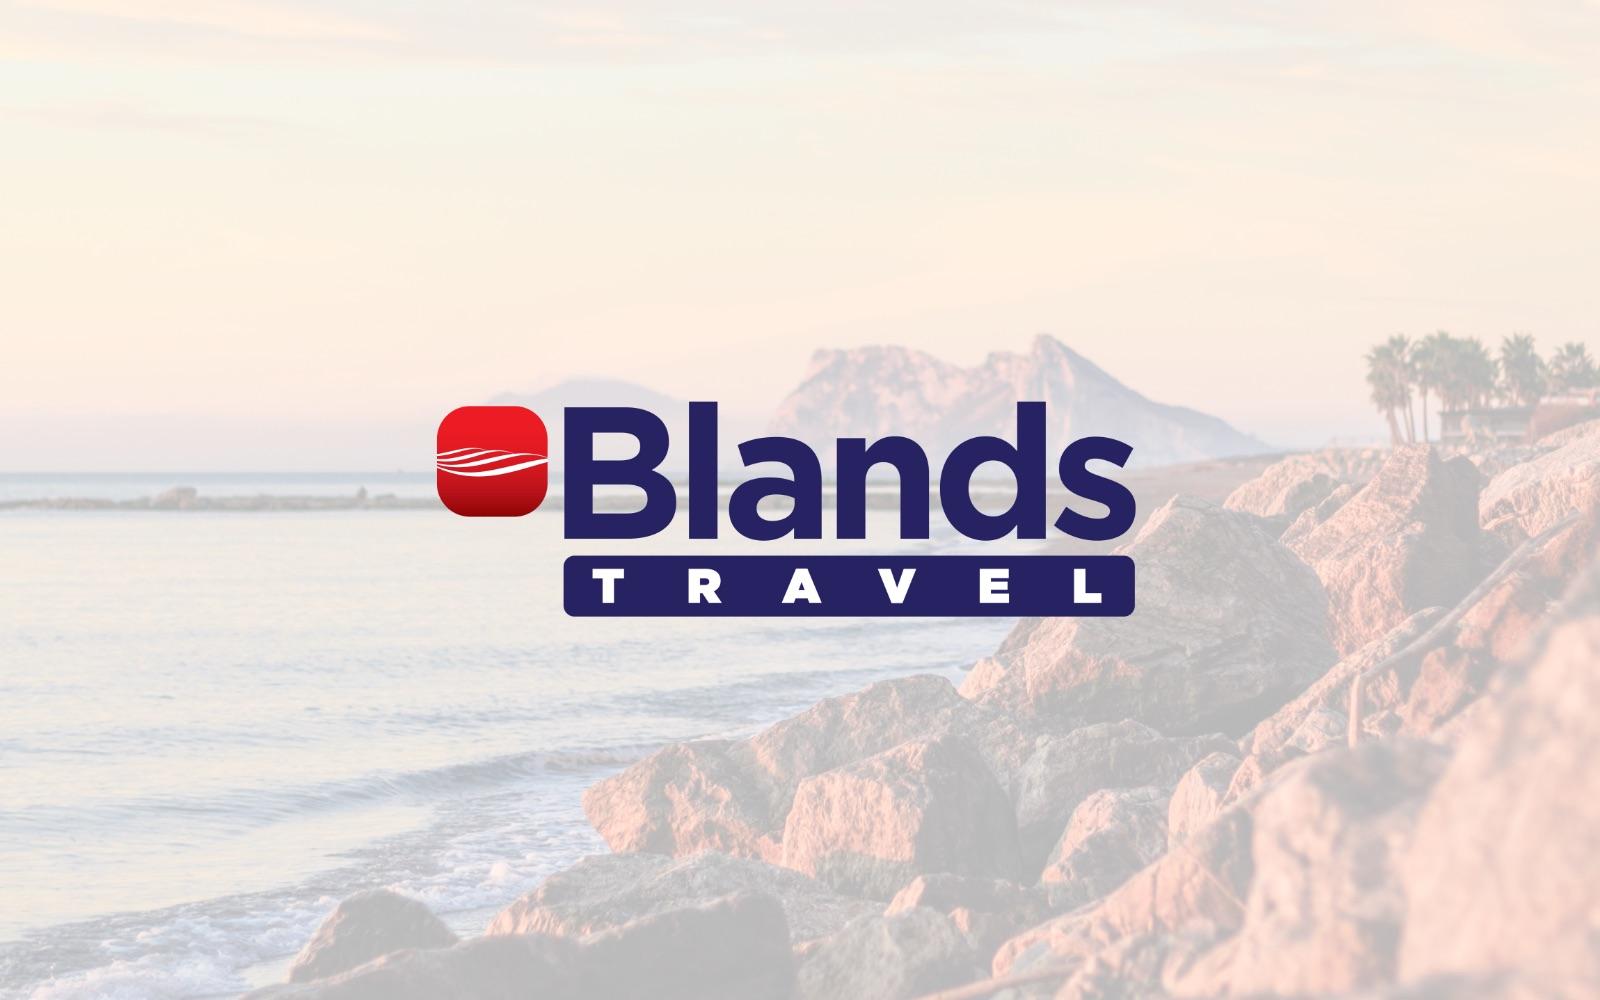 Blands Travel Image